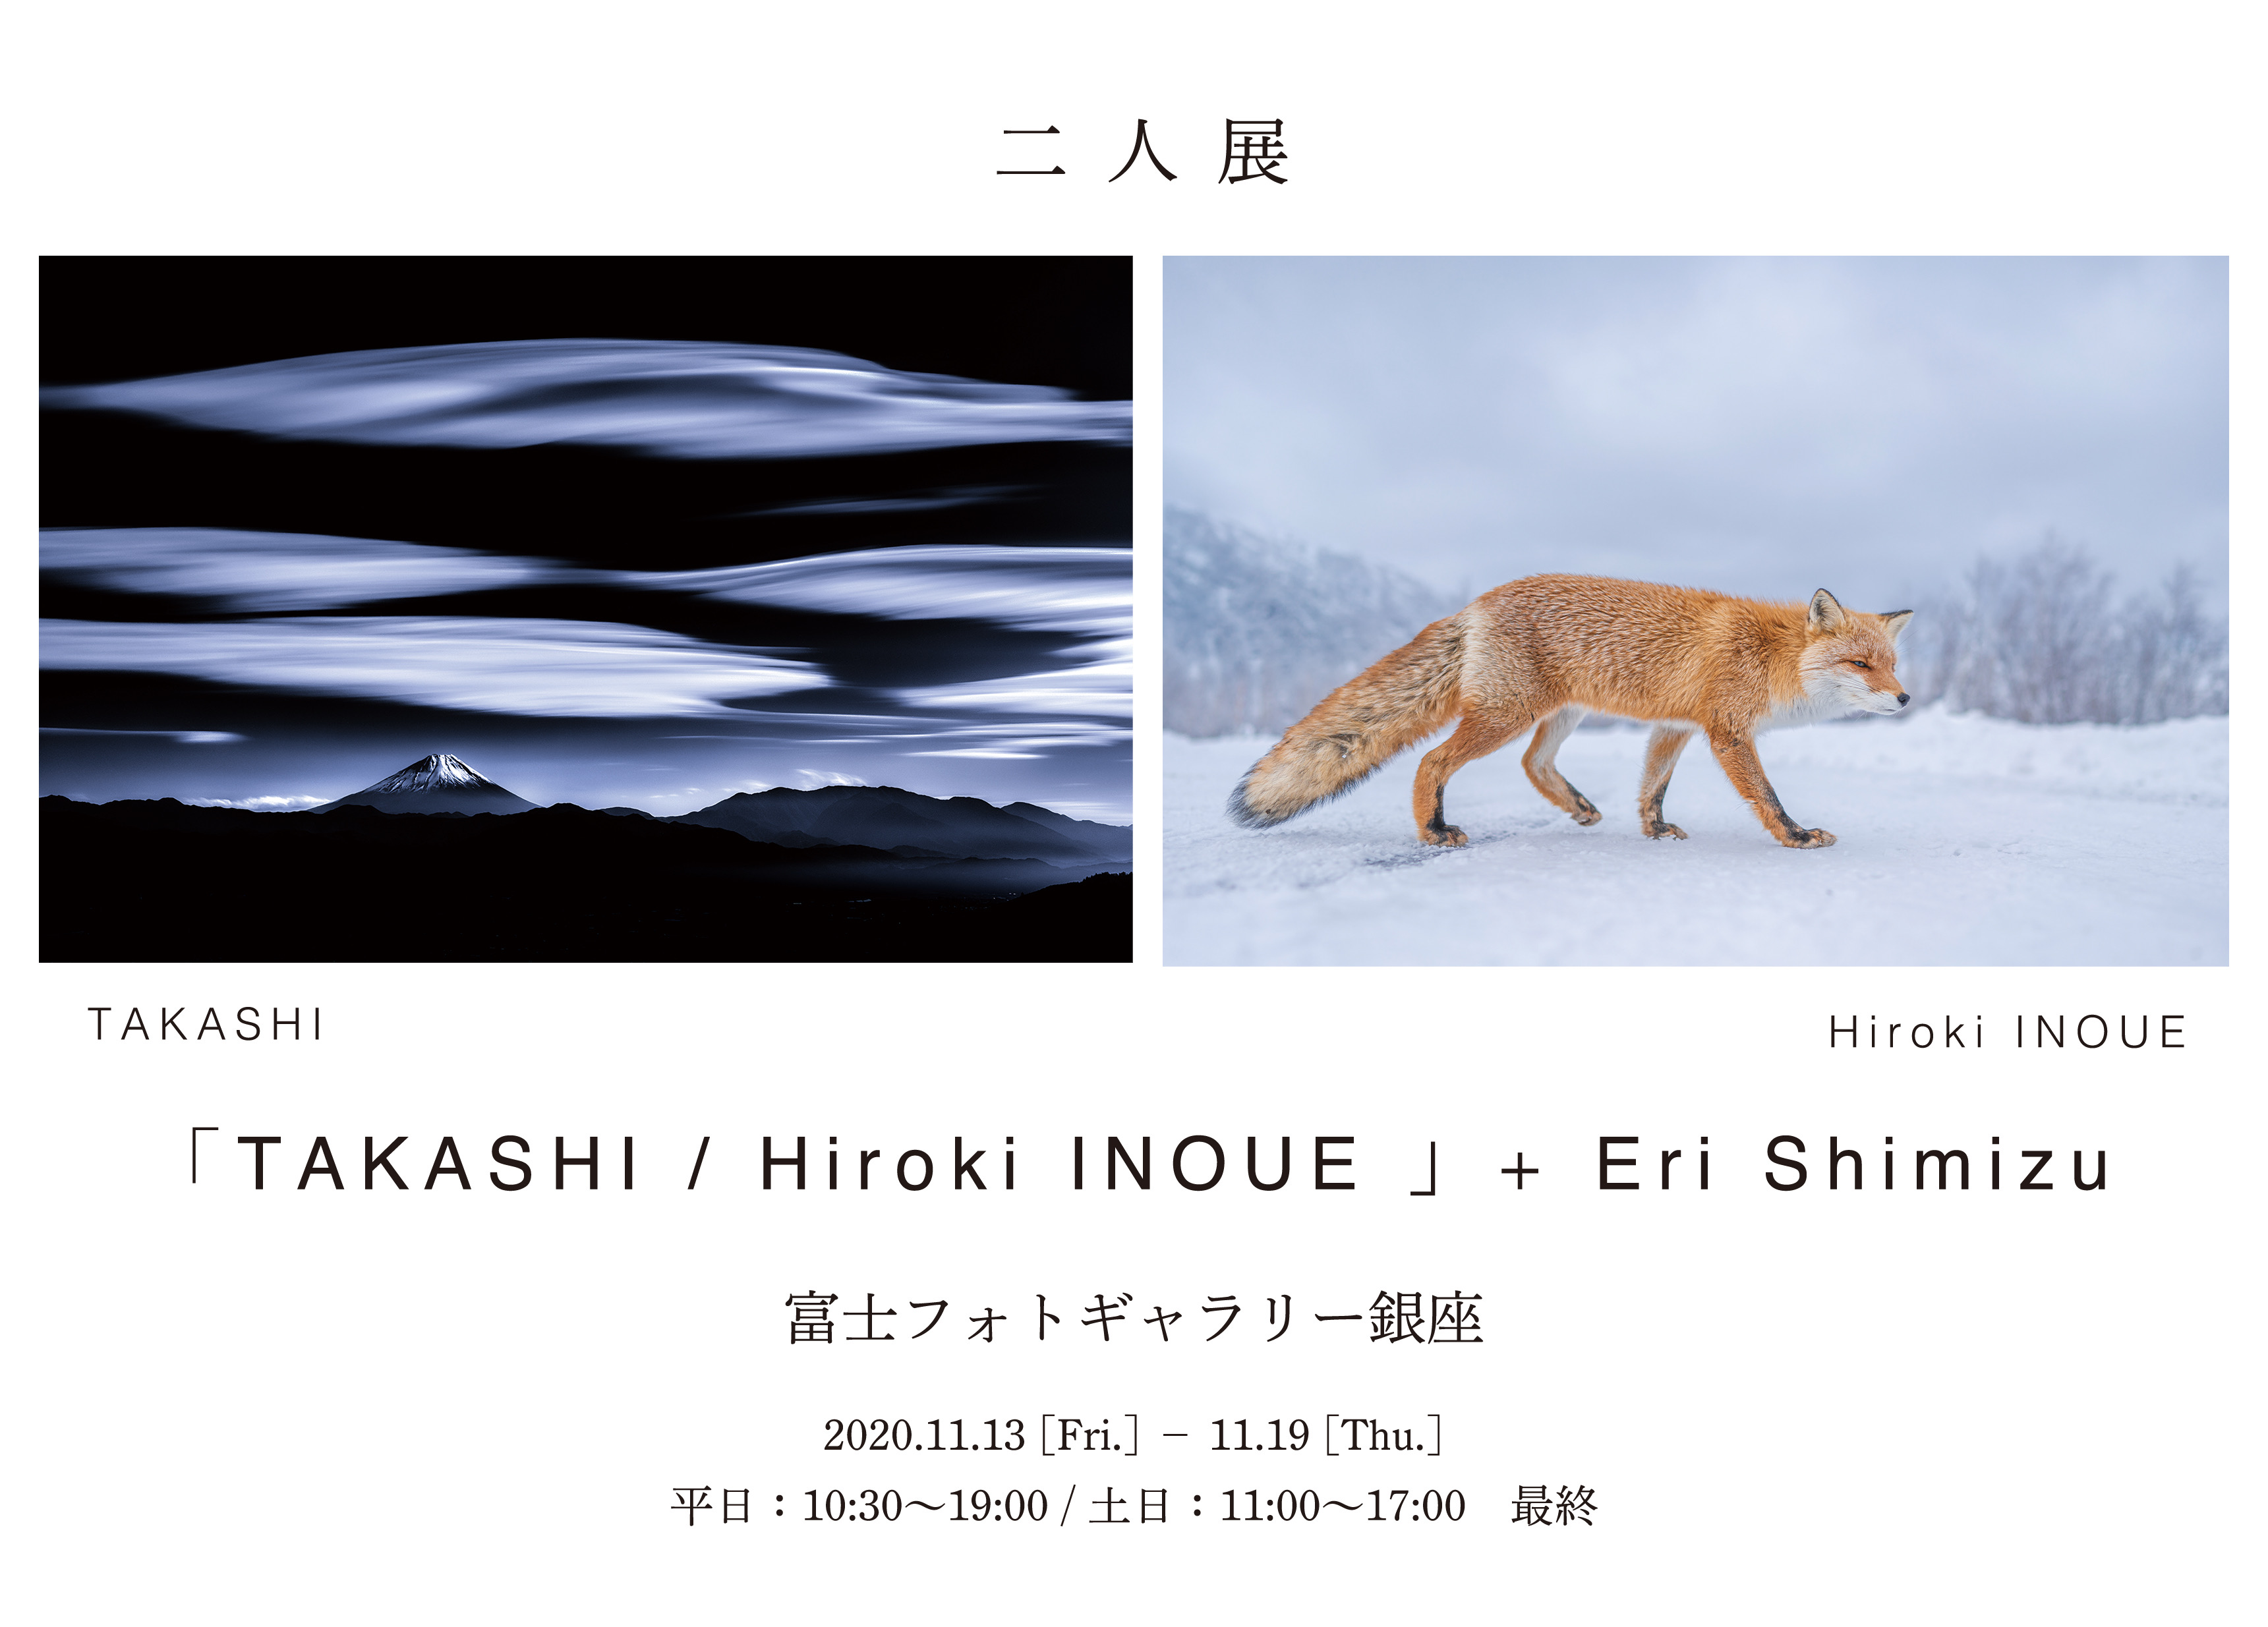 富士フォトギャラリー銀座で写真展を開催しています。